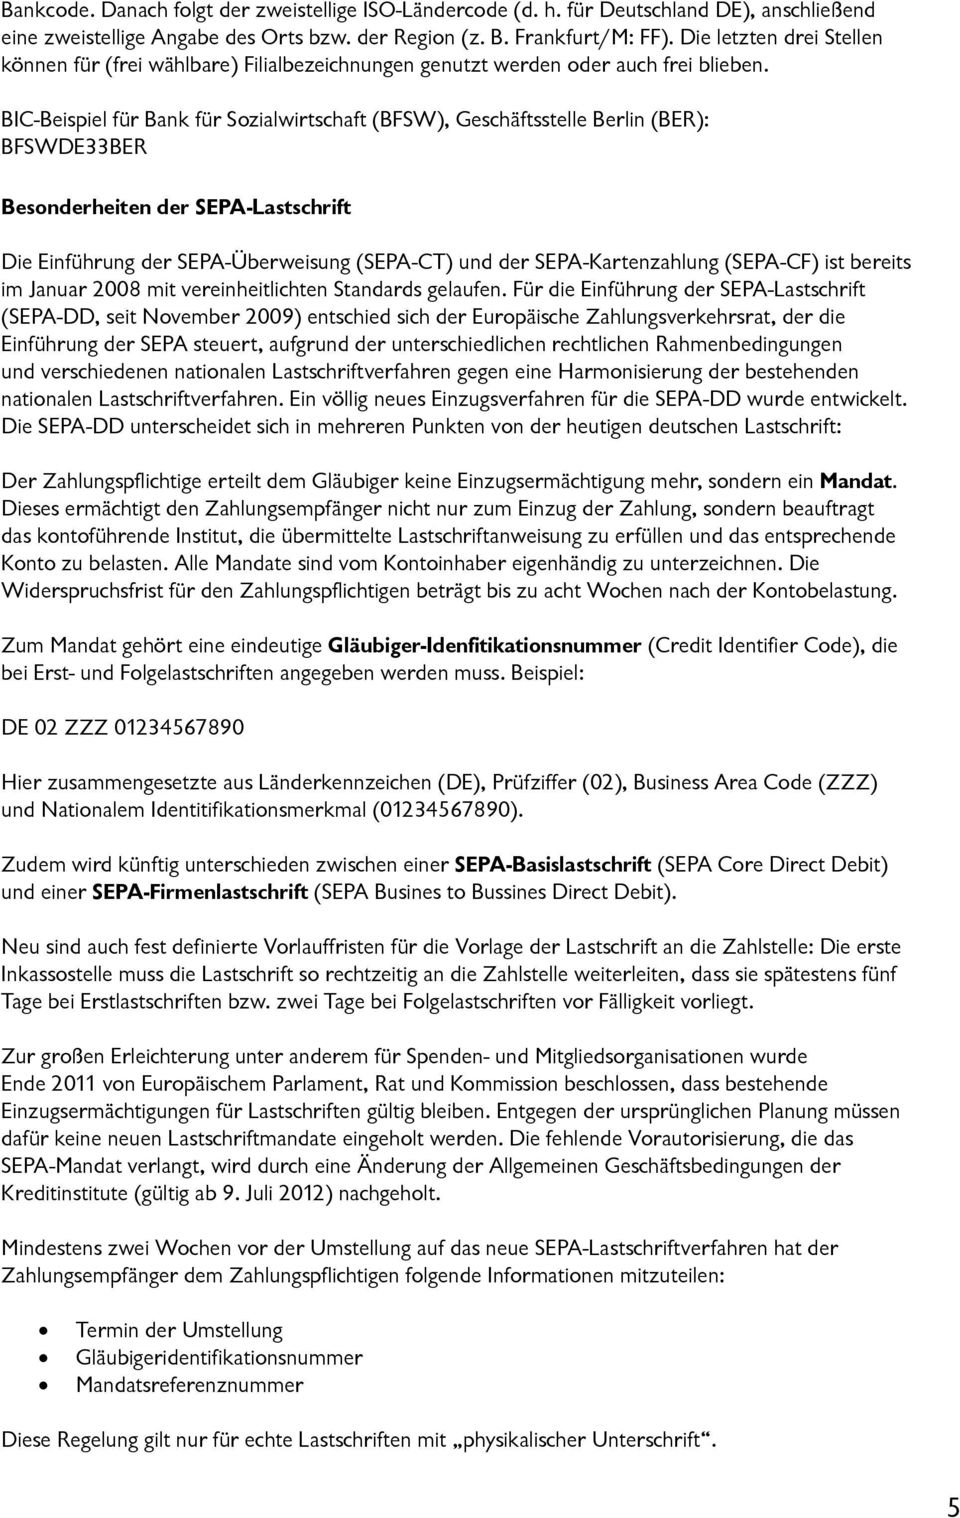 BIC-Beispiel für Bank für Sozialwirtschaft (BFSW), Geschäftsstelle Berlin (BER): BFSWDE33BER Besonderheiten der SEPA-Lastschrift Die Einführung der SEPA-Überweisung (SEPA-CT) und der